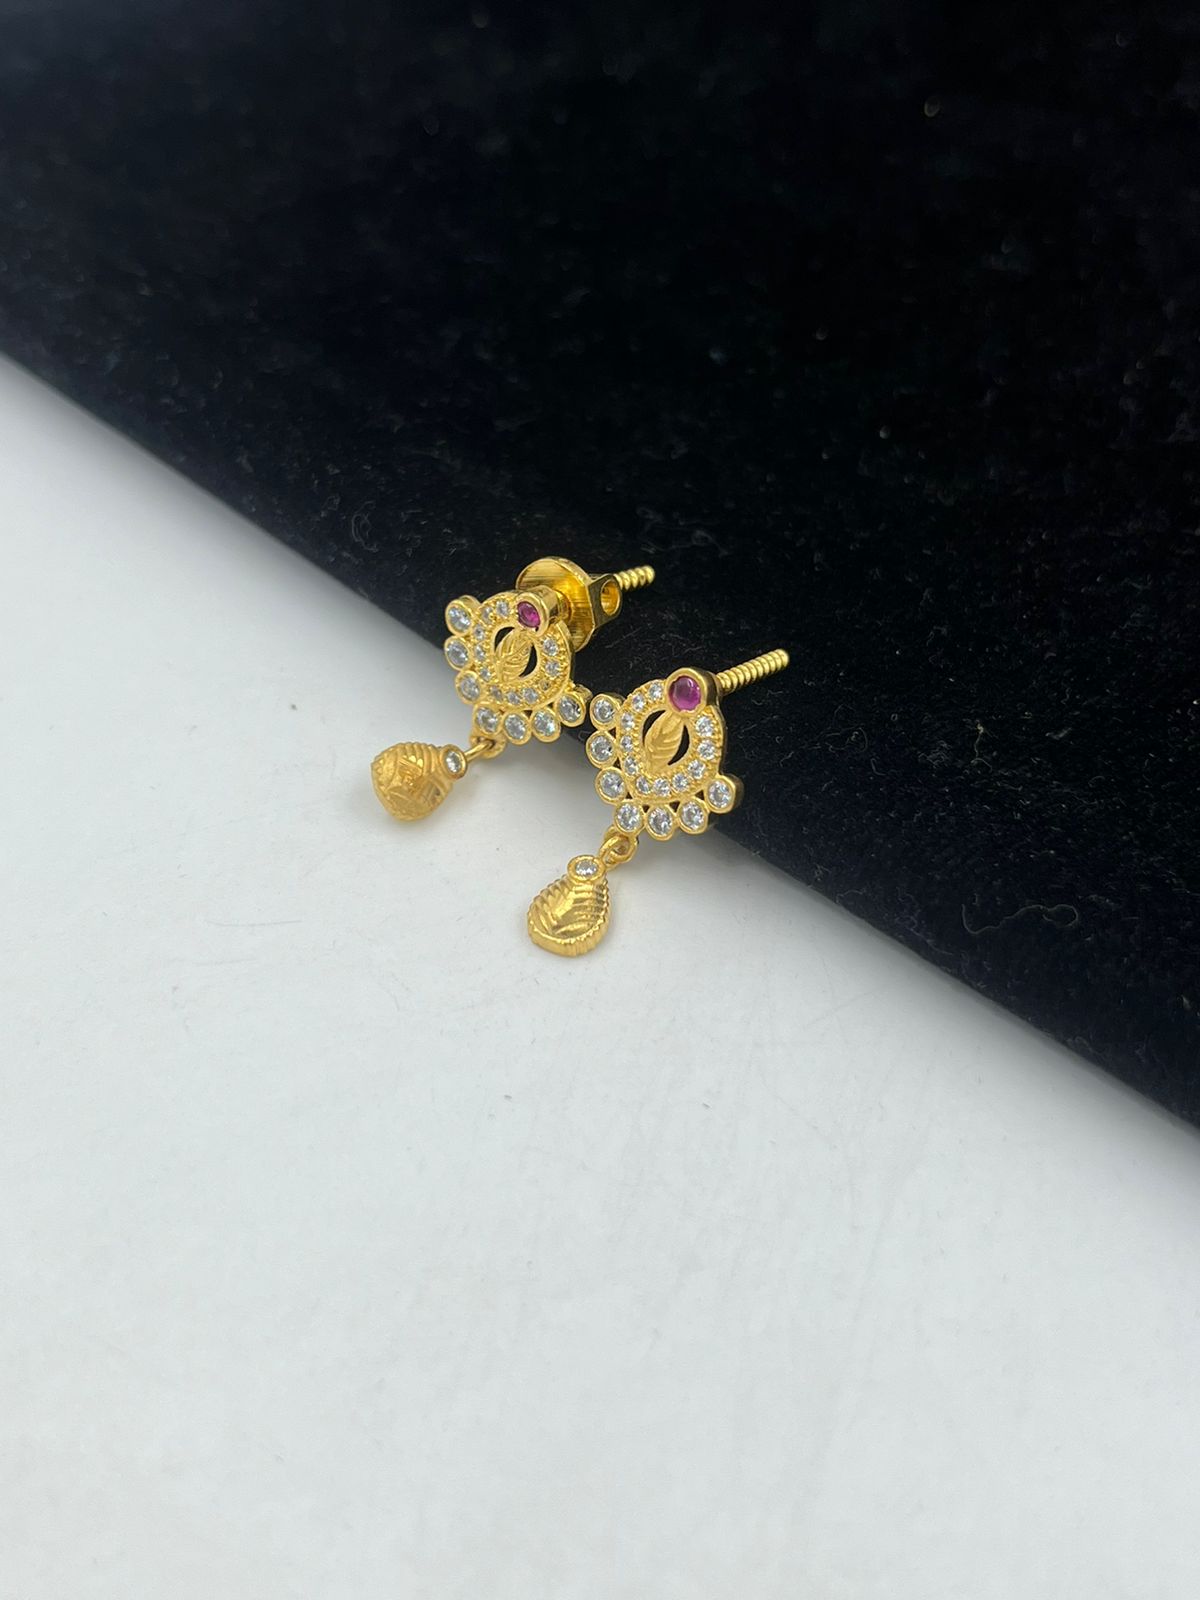 Update 78+ gold earrings in 1 gram latest